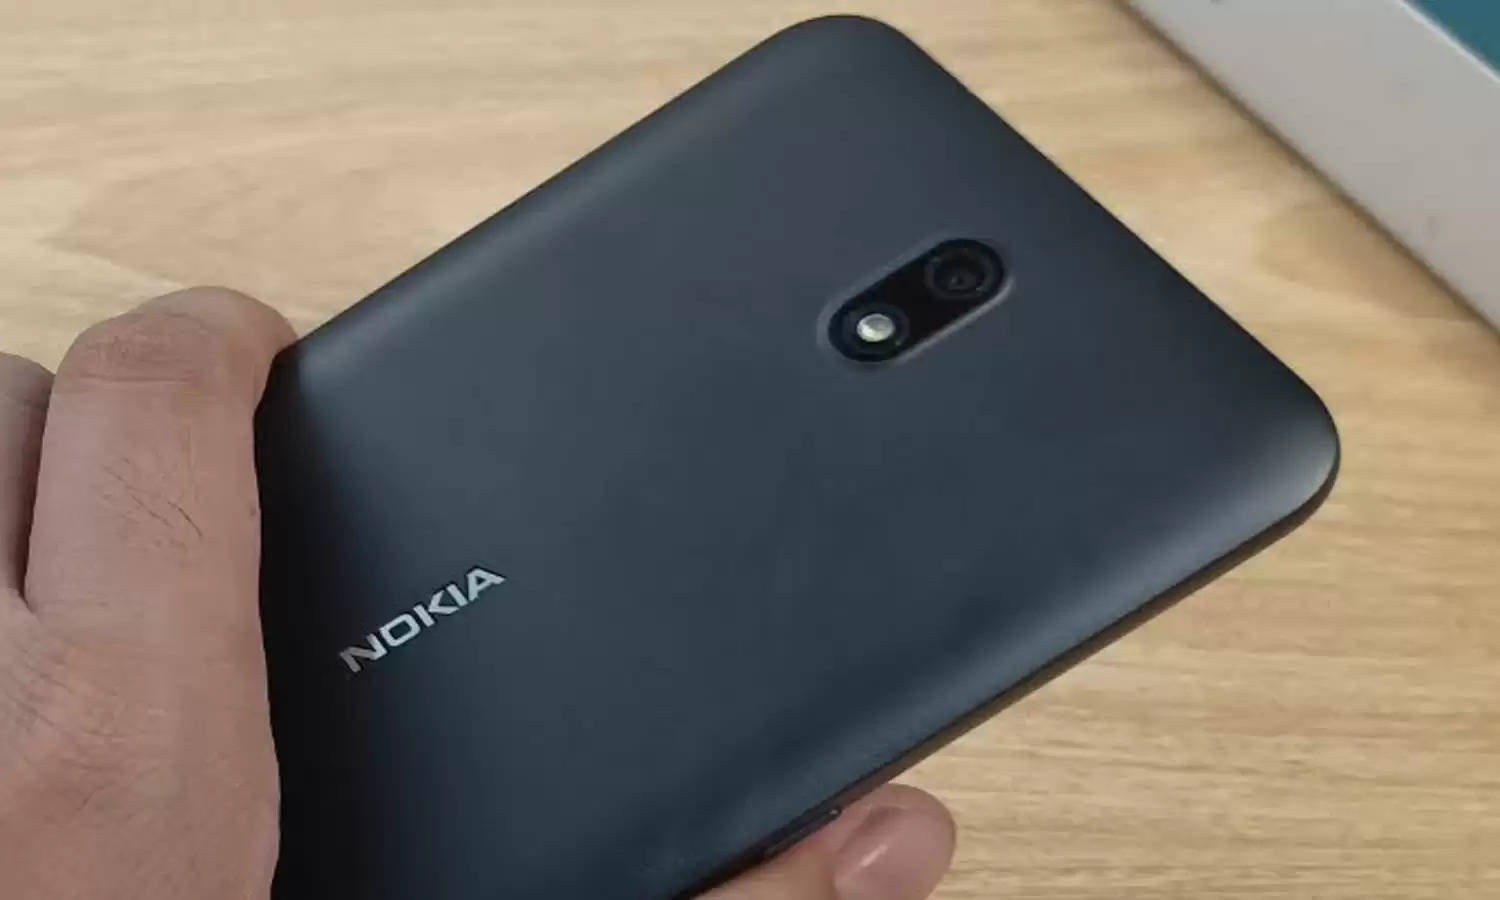 लड़कियों का दिल चुराने आया Nokia का सस्ता और गर्दा कैमरा वाला फोन, कीमत केवल 6500 रूपये, फीचर्स हैं धांसू